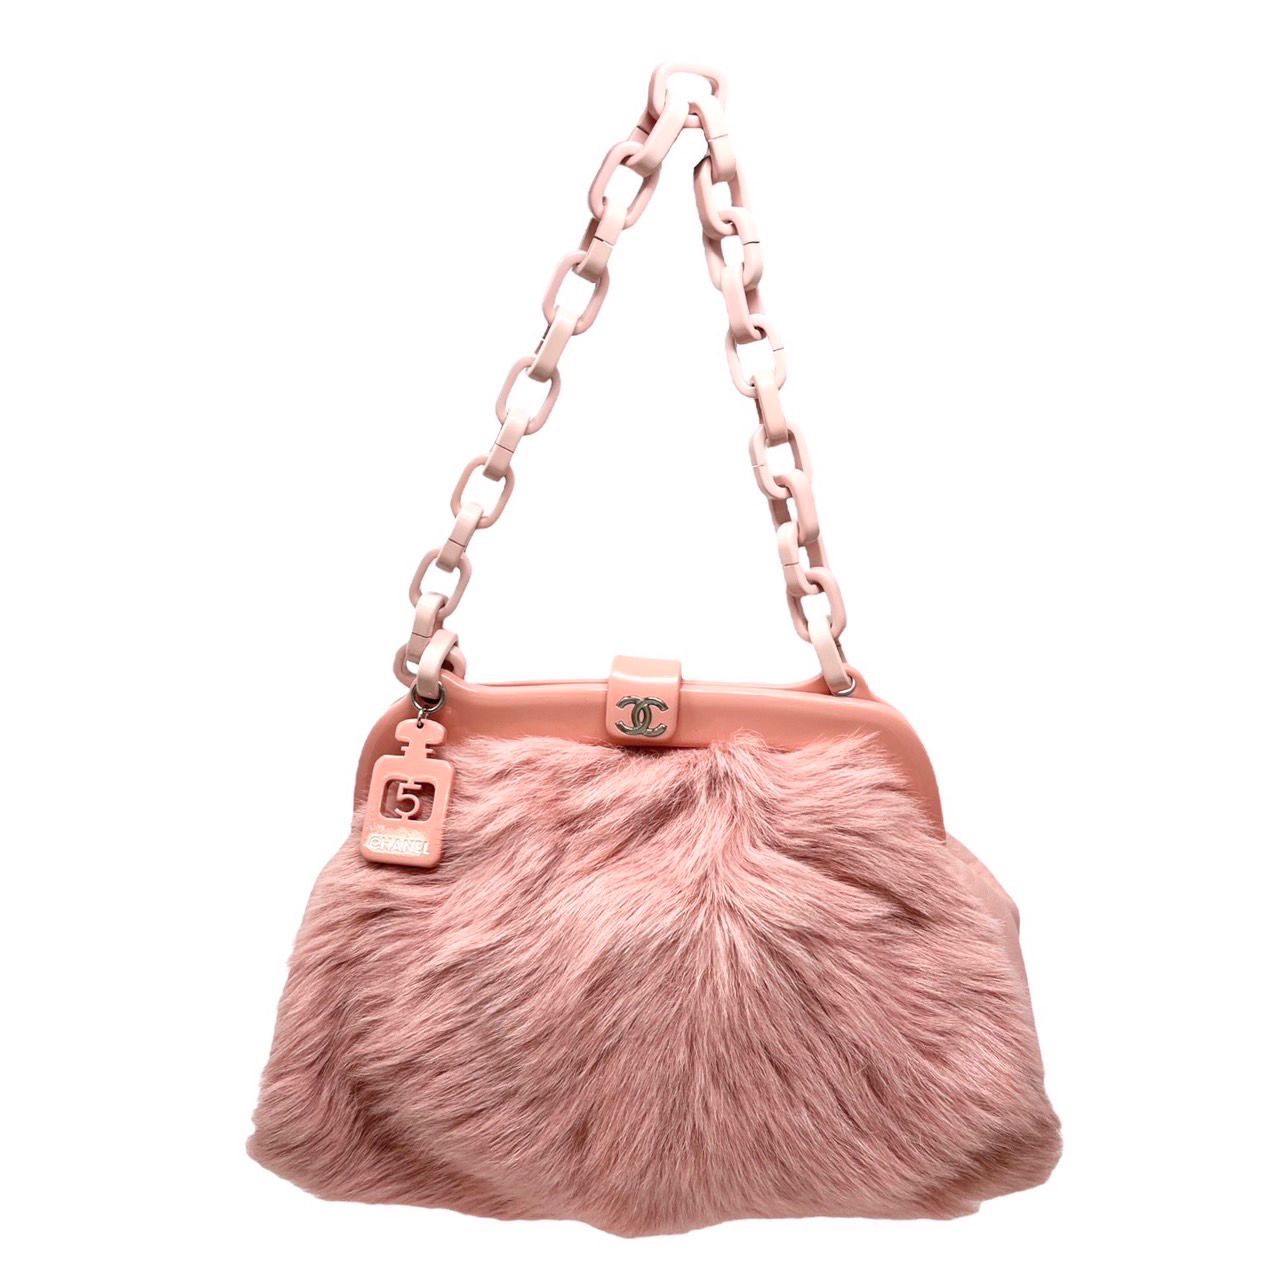 Chanel Pink Fur Chain Shoulder Bag